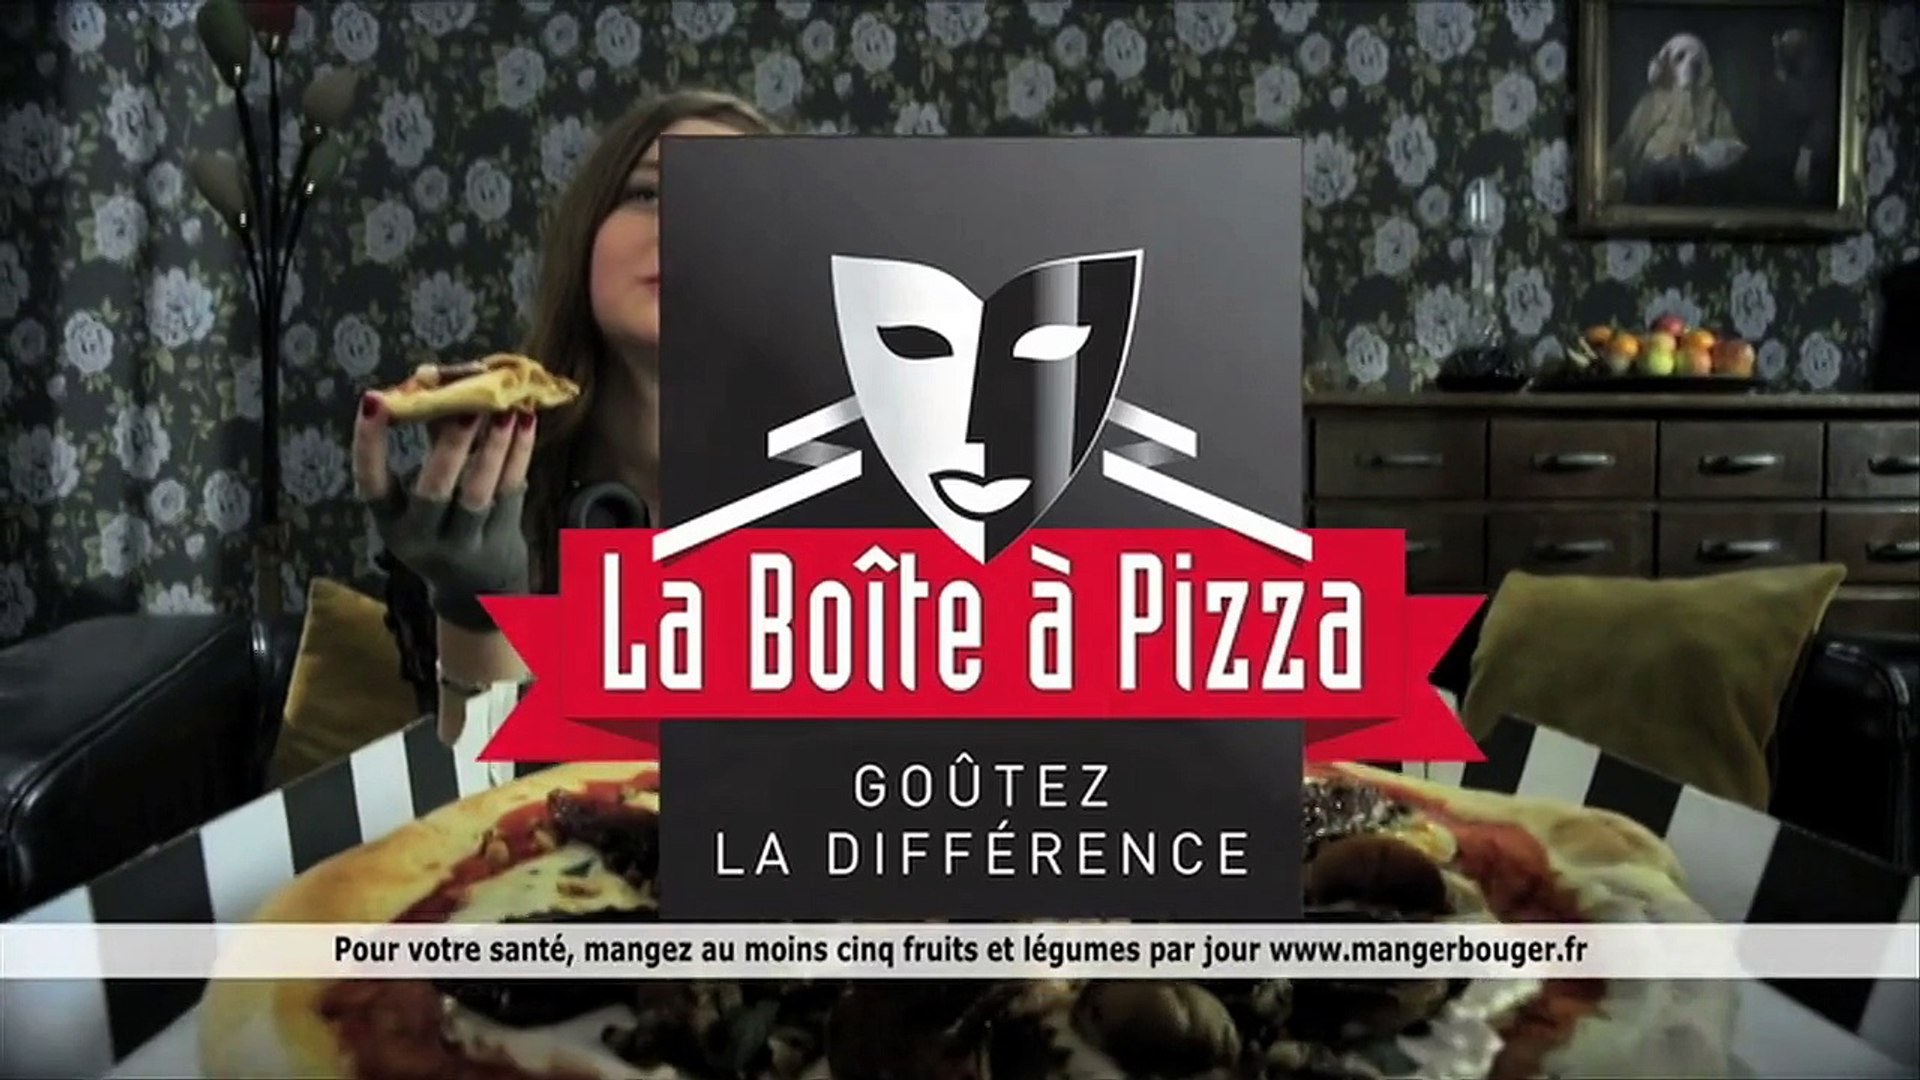 La Boîte à Pizza - pizzas à emporter, "Goûtez la différence" - février 2012  - La boîte à pizza en famille - Vidéo Dailymotion